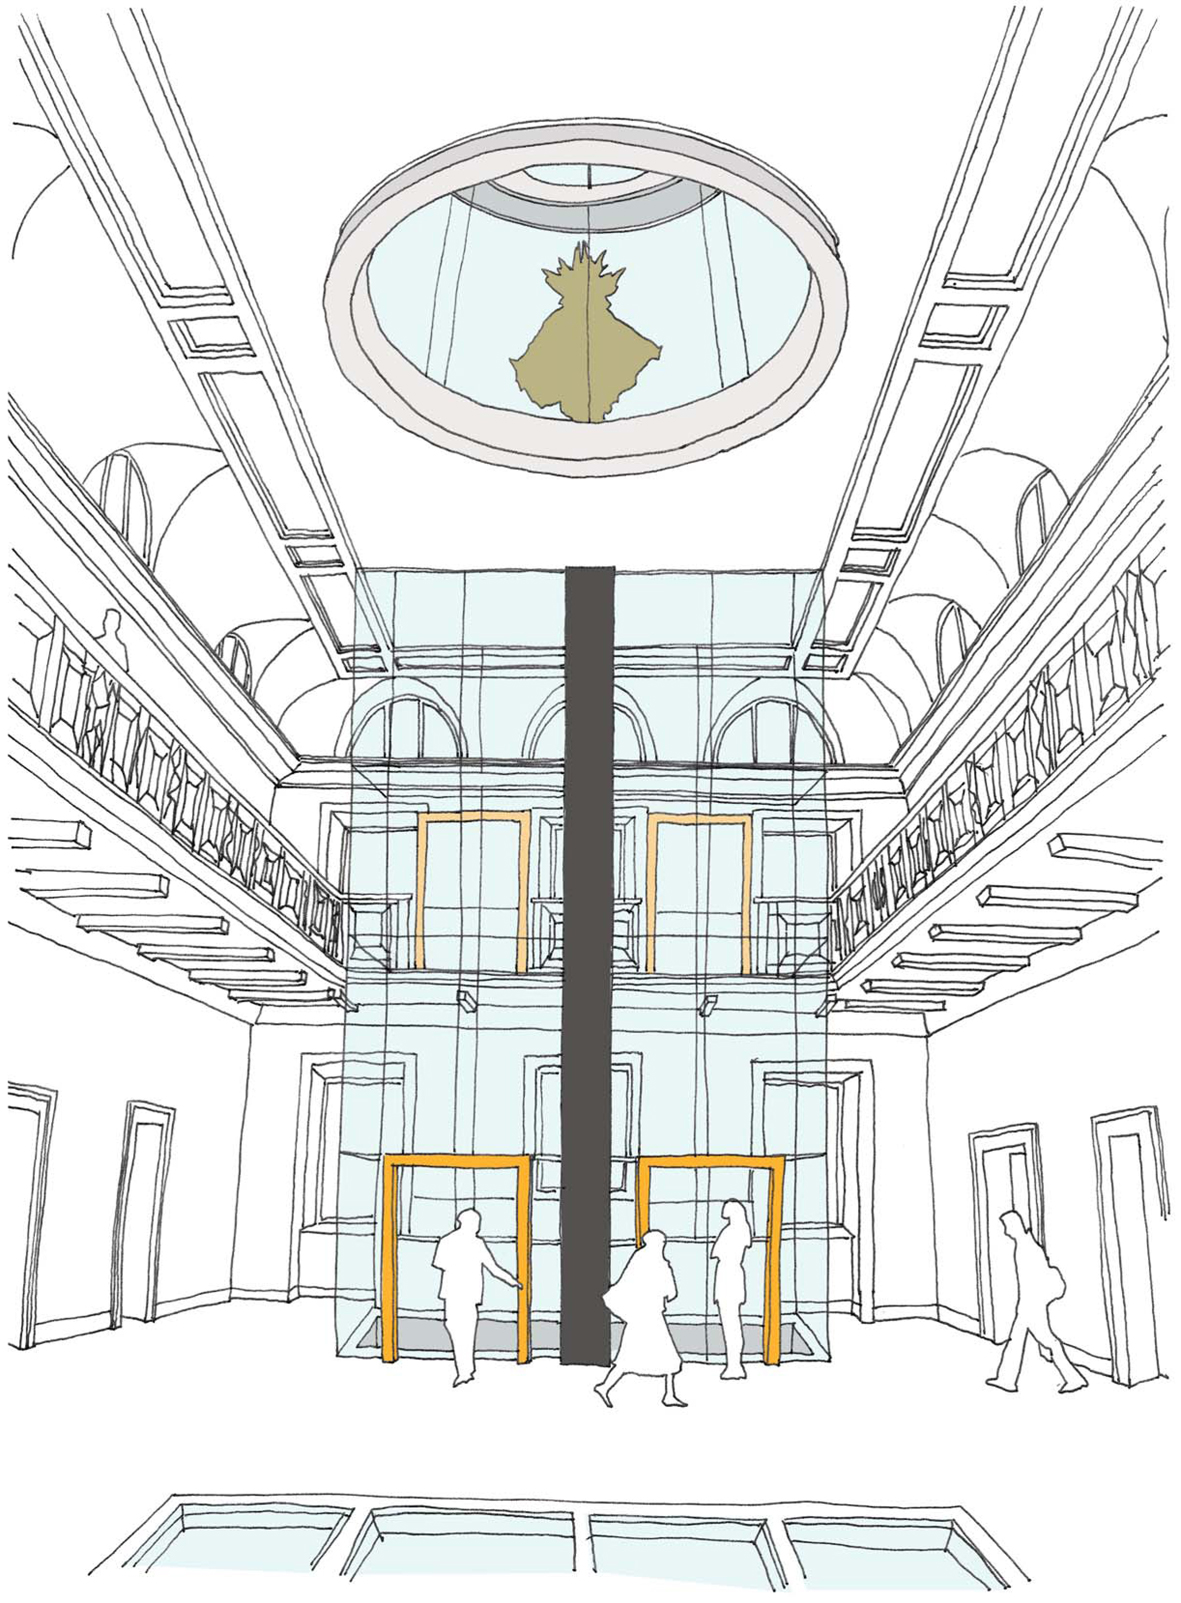  ASL atrium design for International Slavery Museum